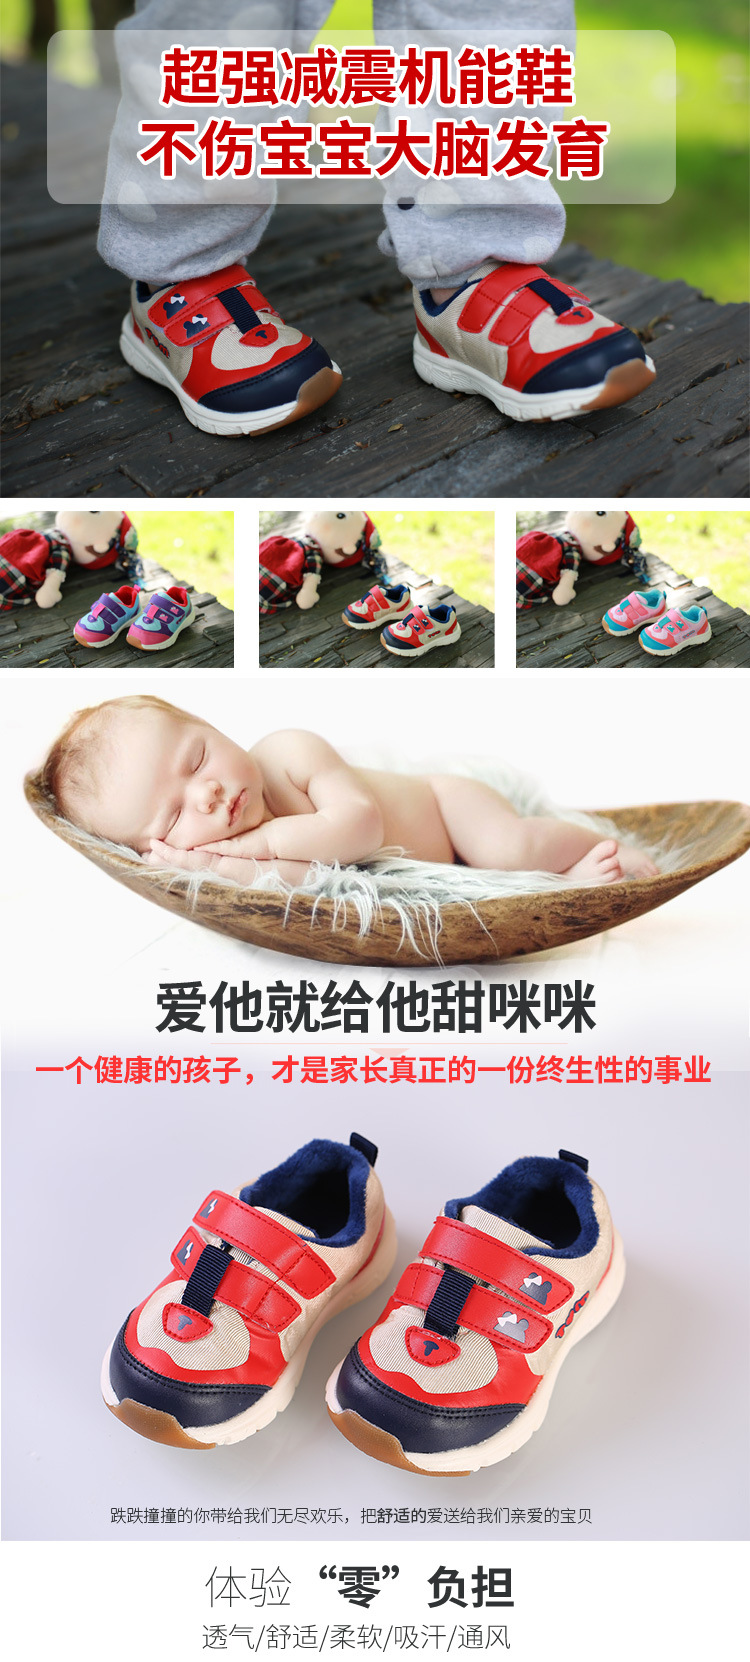 婴幼儿鞋子机能鞋秋冬款宝宝鞋子甜咪咪1-2岁潮鞋韩版示例图1